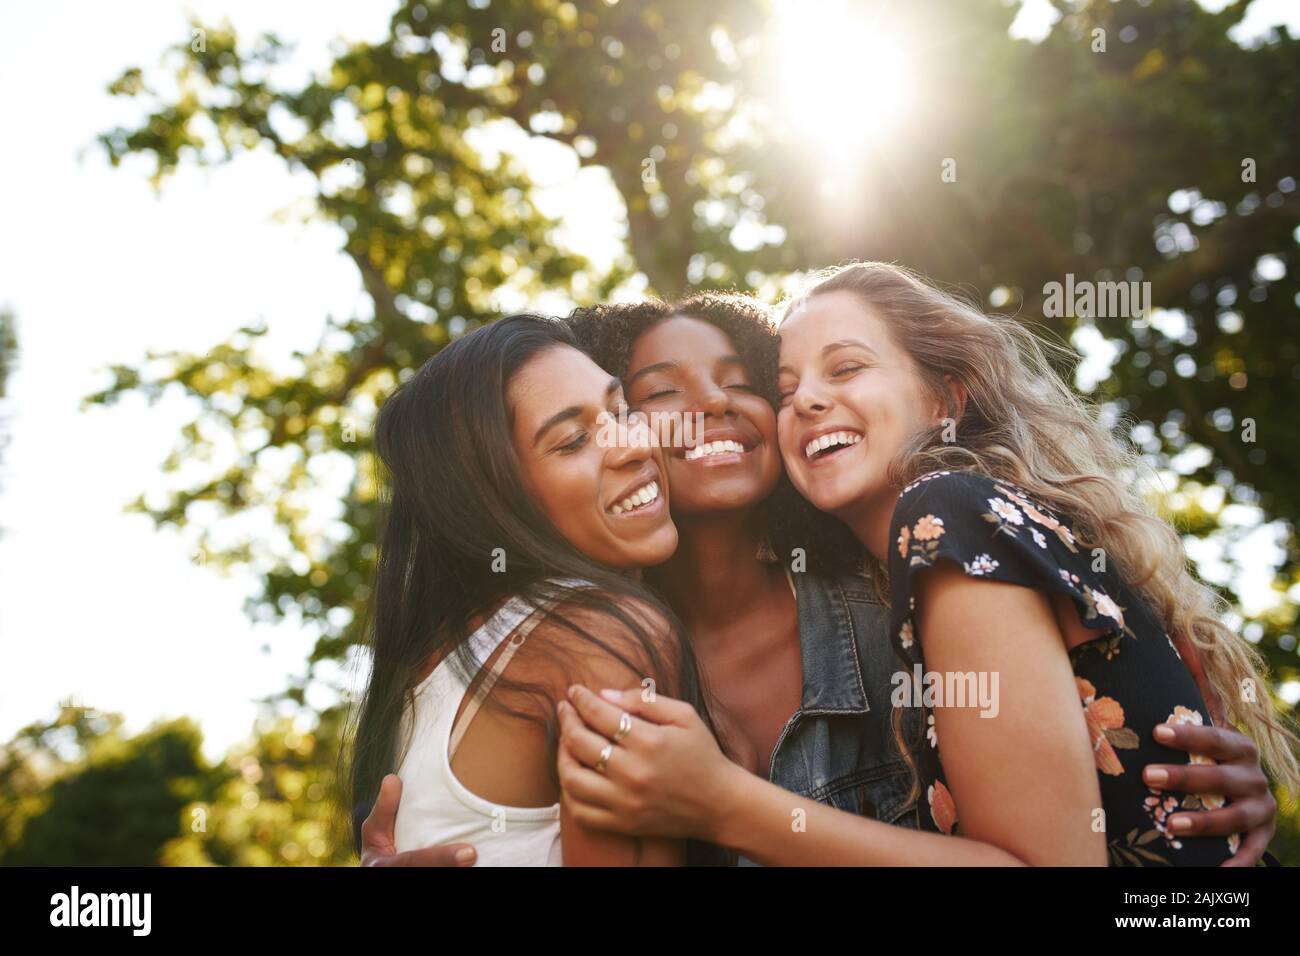 Portrait Of Happy multiethnische Gruppe weibliche Freunde umarmen und umarmt einander Lachen und Spaß haben, im Freien in einem Park Stockfoto